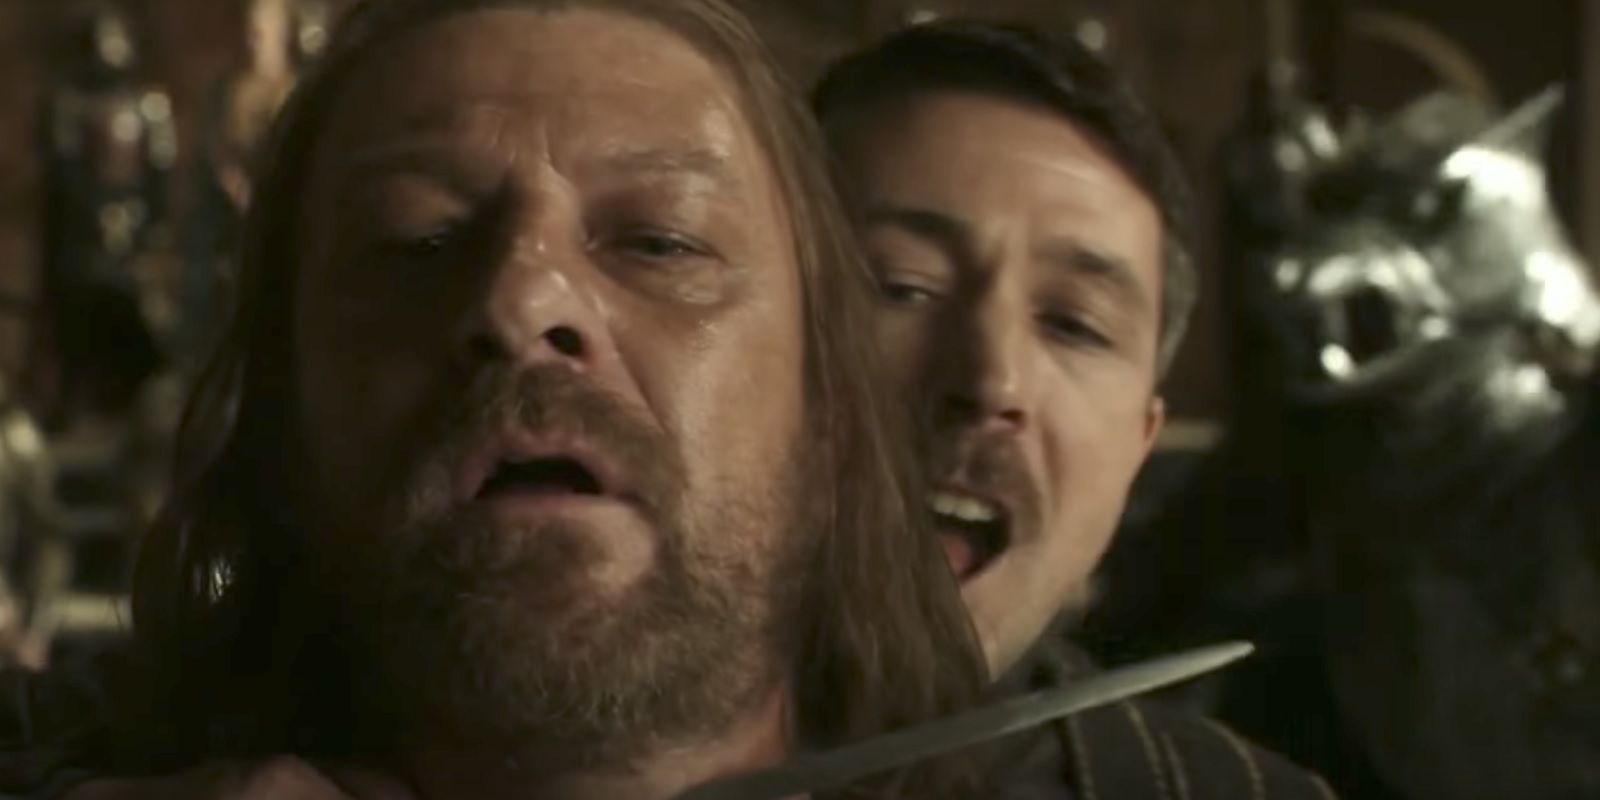 Littlefinger puts a knife on Ned Stark's throat in Game of Thrones